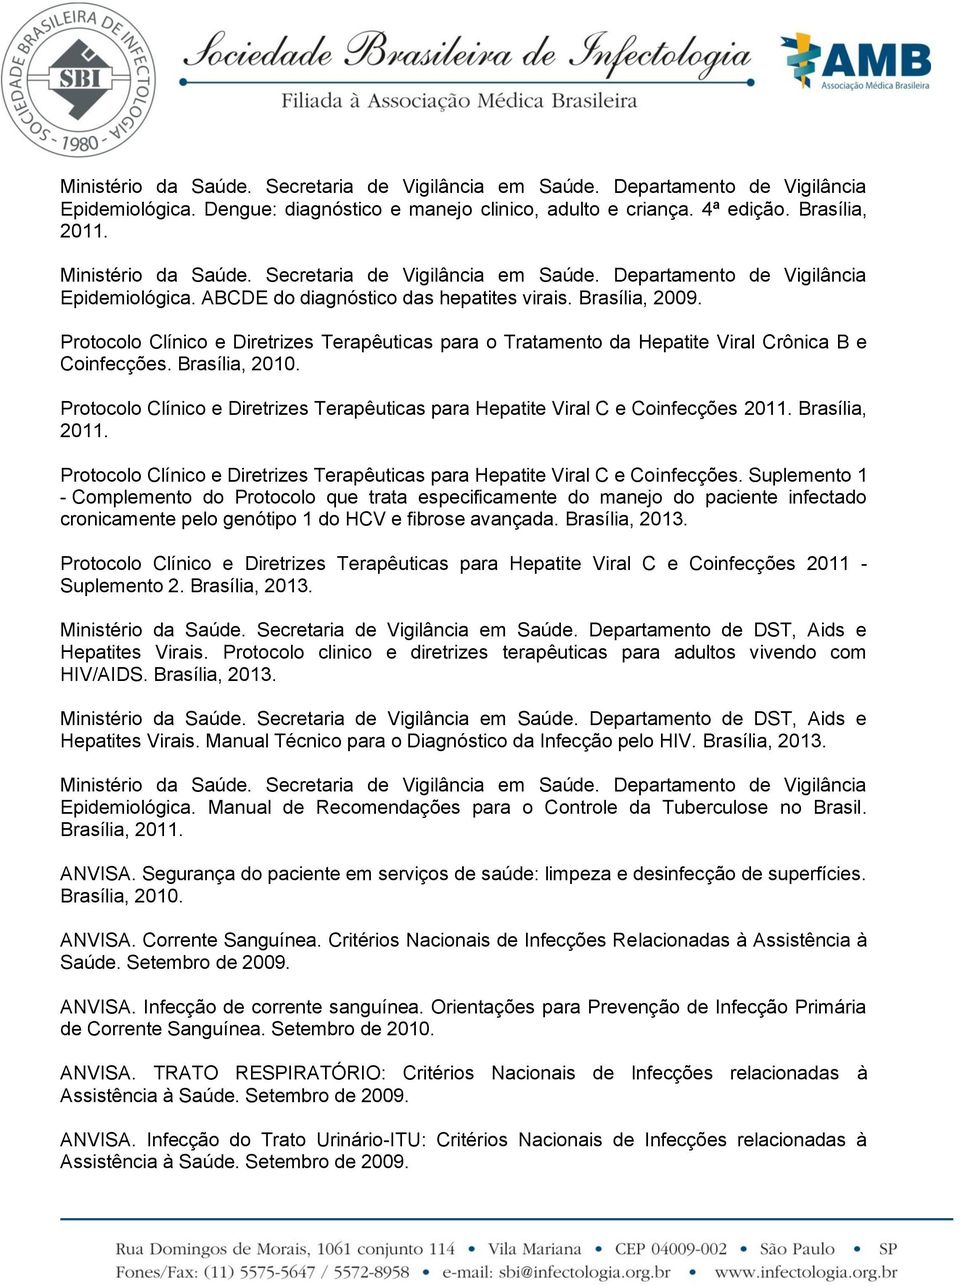 Protocolo Clínico e Diretrizes Terapêuticas para Hepatite Viral C e Coinfecções 2011. Brasília, 2011. Protocolo Clínico e Diretrizes Terapêuticas para Hepatite Viral C e Coinfecções.